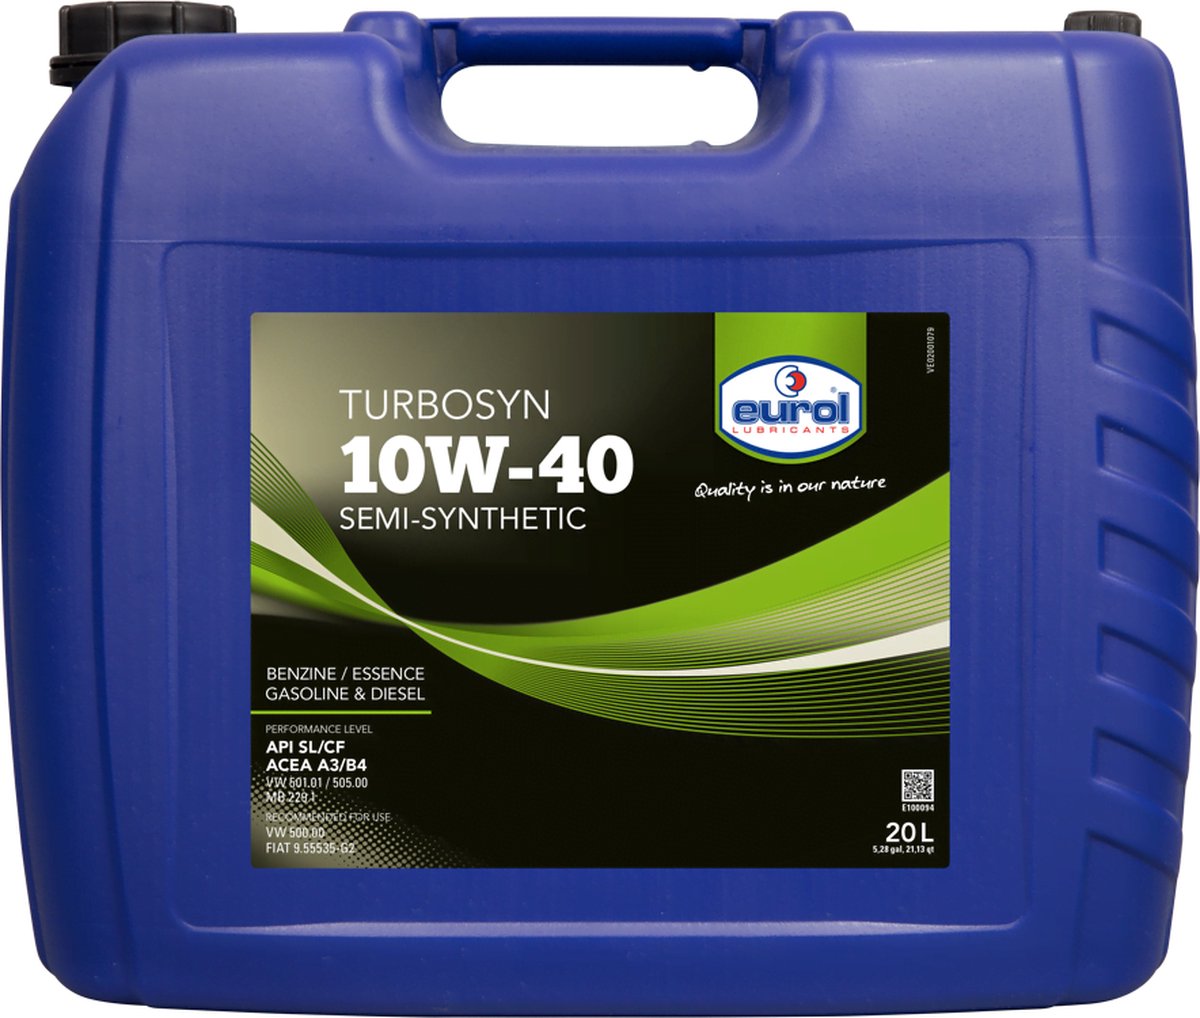 Eurol Turbosyn 10W-40 - 20L